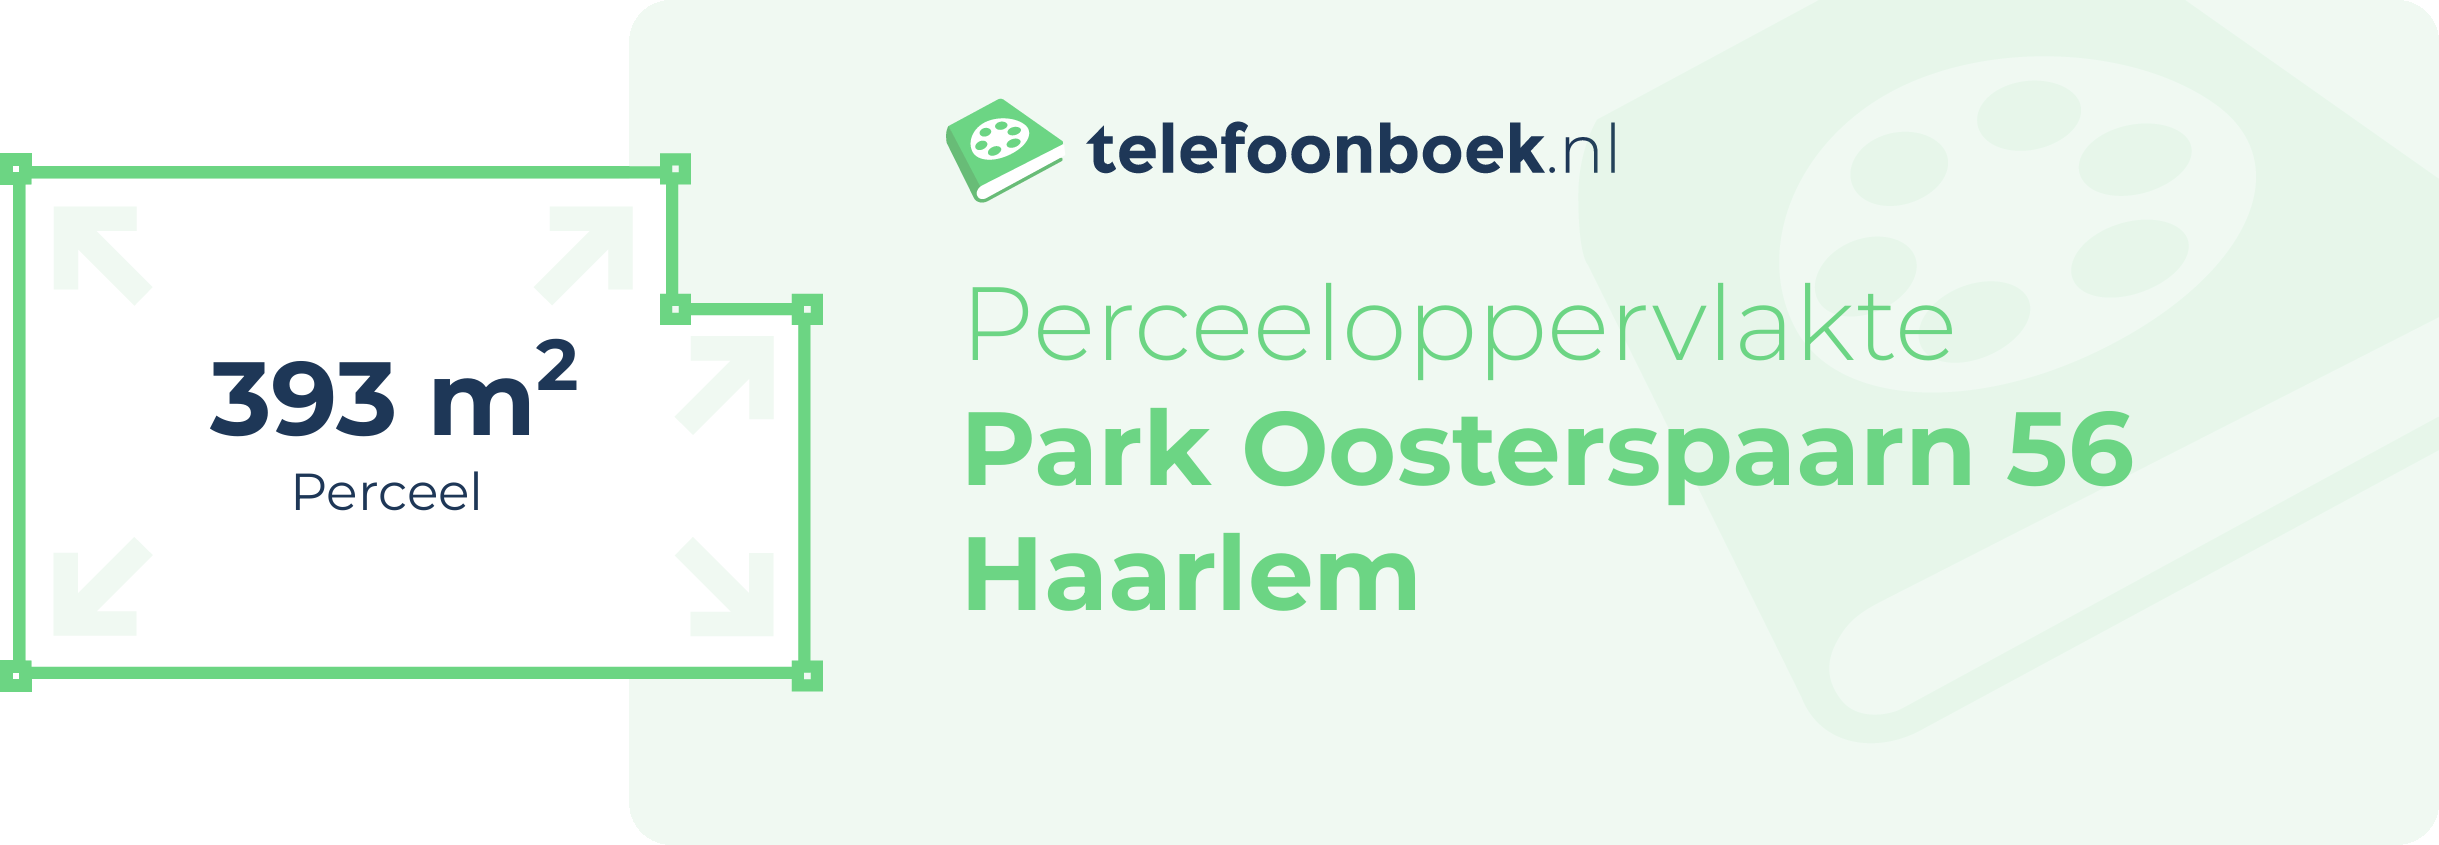 Perceeloppervlakte Park Oosterspaarn 56 Haarlem